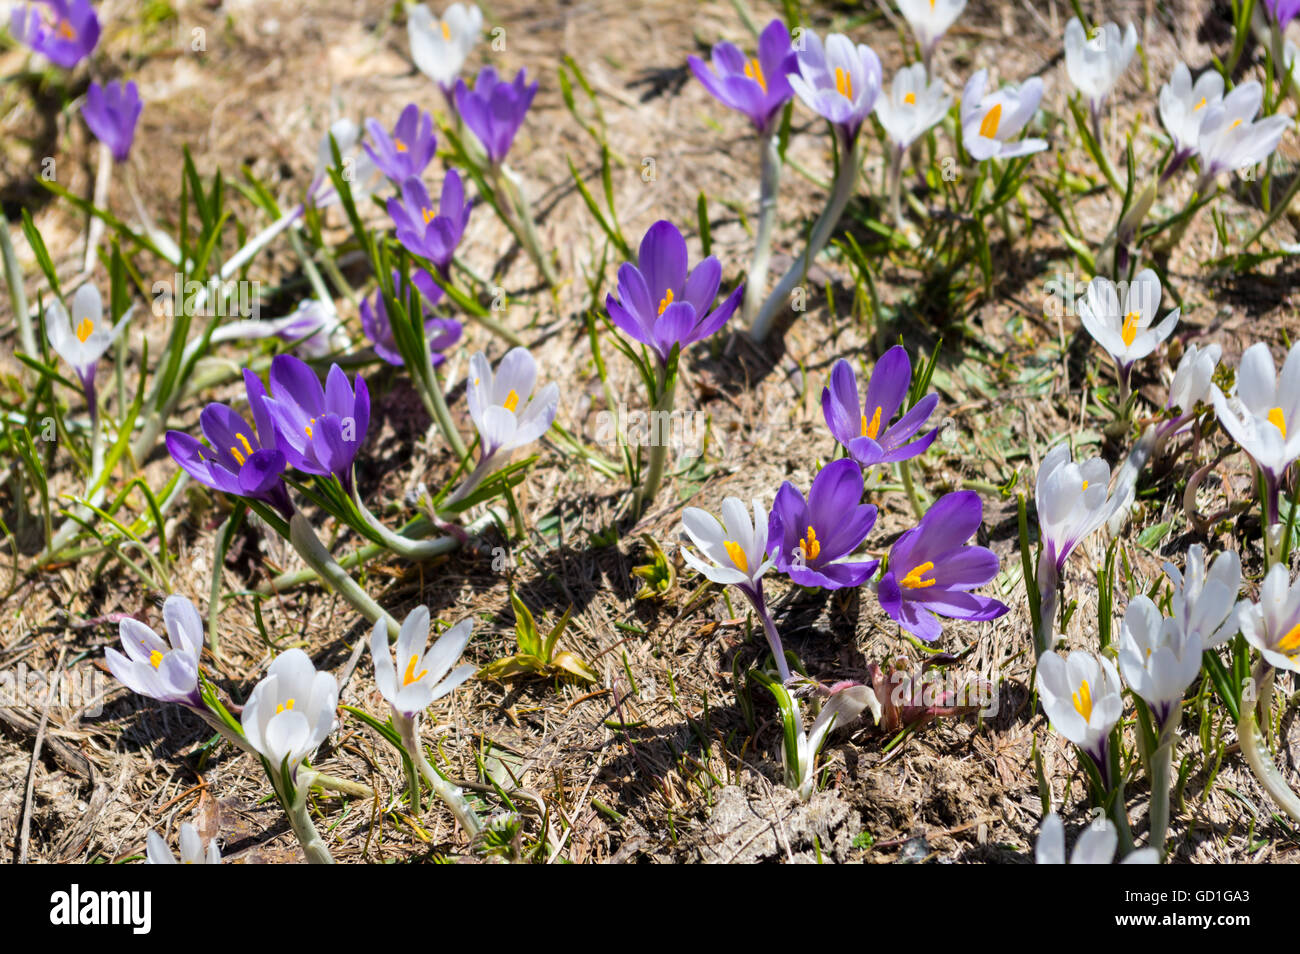 Alpine spring crocus (crocus vernus albiflorus) flowers in white and violet. Stock Photo